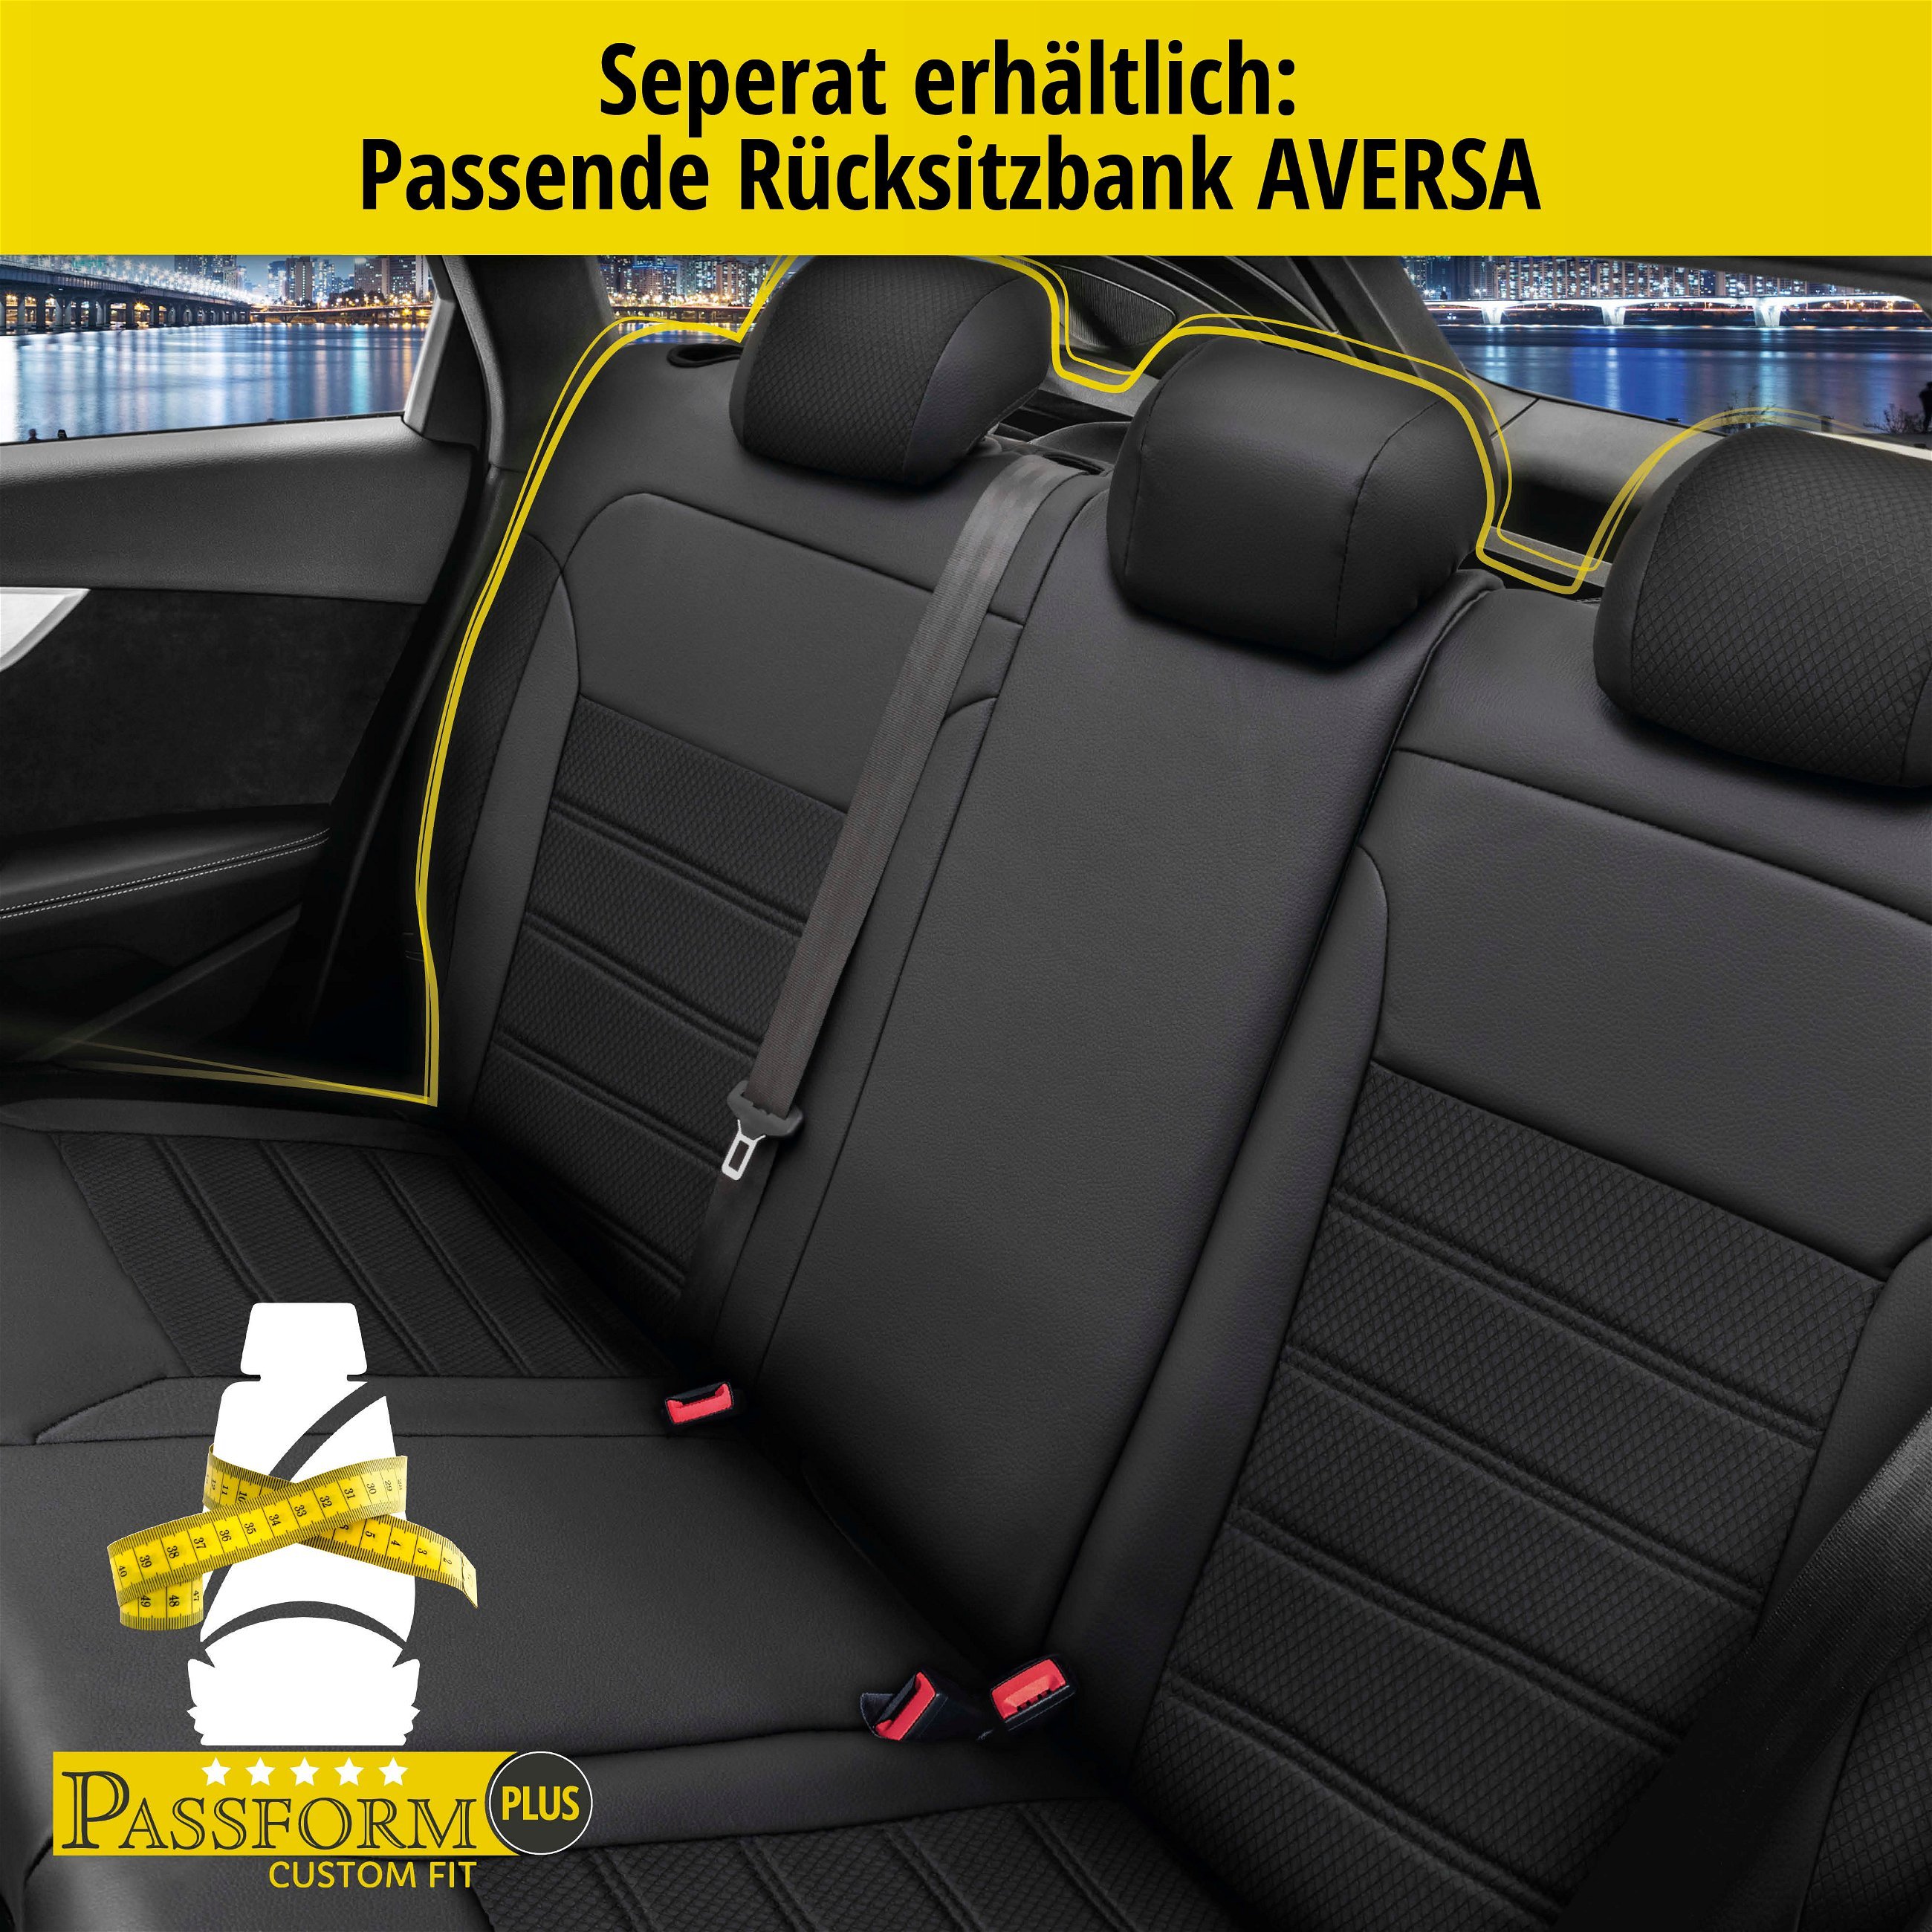 Passform Sitzbezug Aversa für VW Up 08/2011-Heute, 2 Einzelsitzbezüge für Highbacksitze